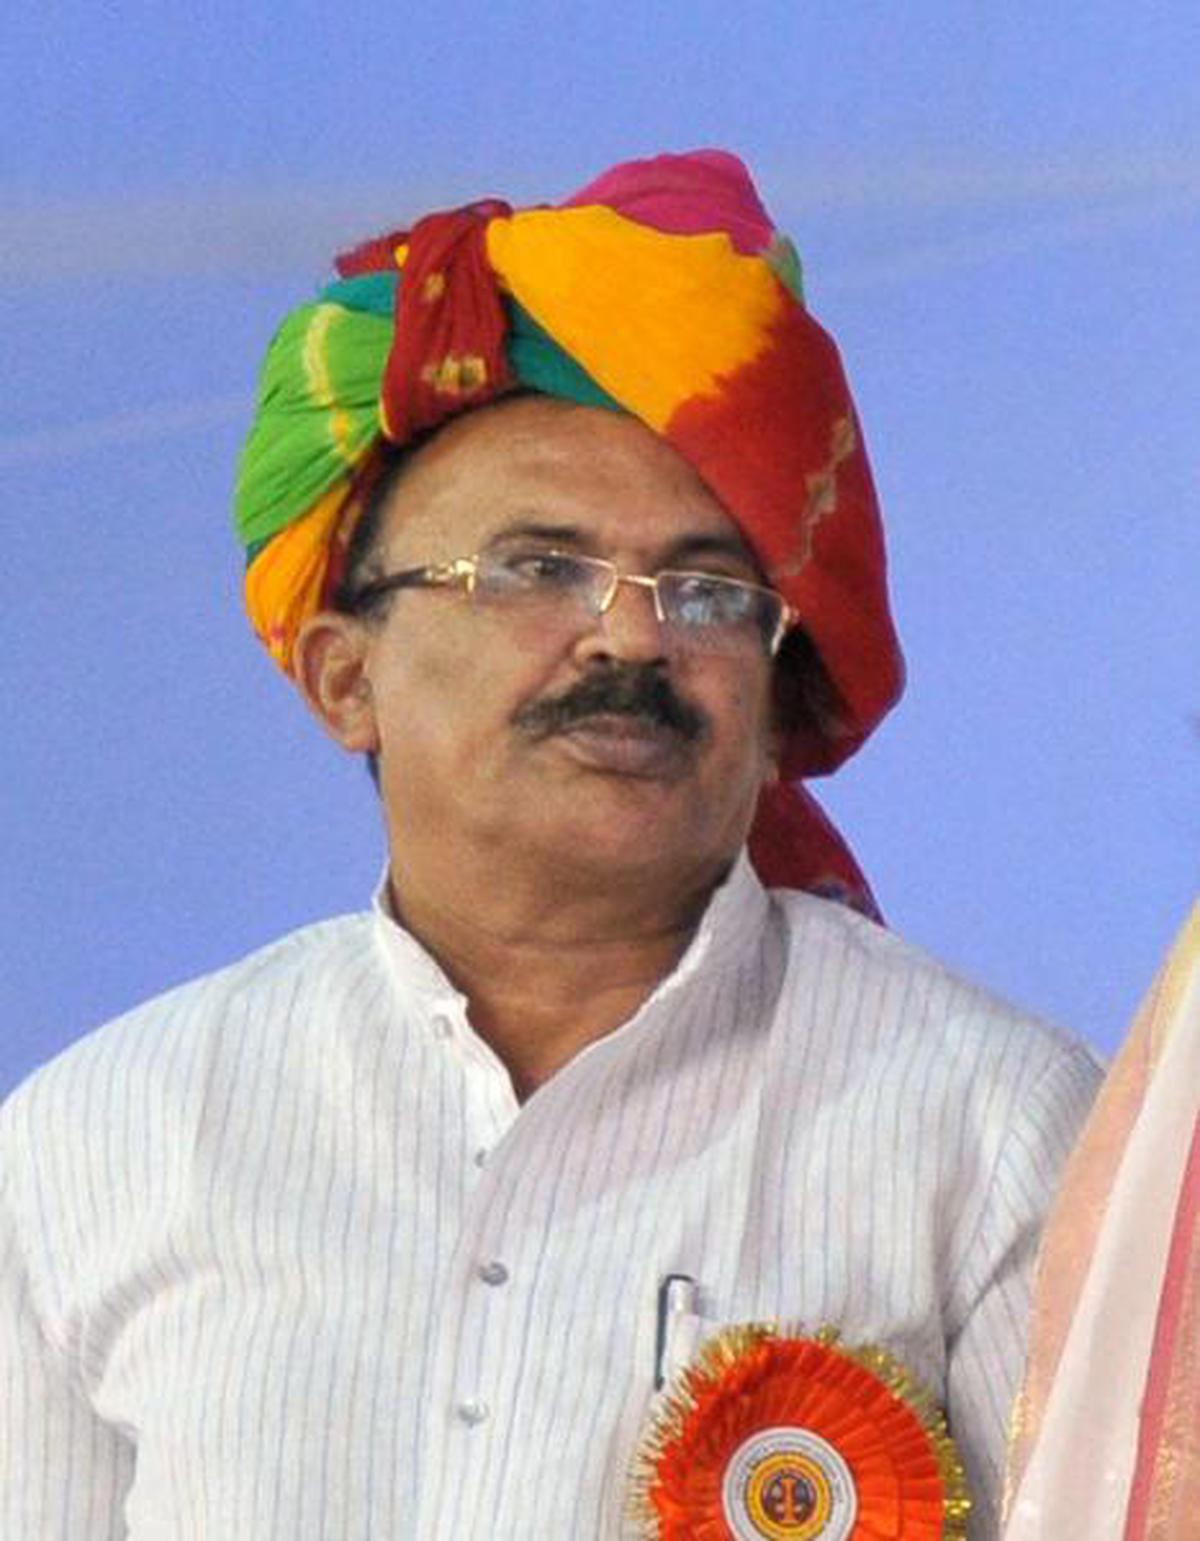 BJP MLA Vasudev Devnani slams Rajasthan Minister Ashok Chandna over remark on 'auction' of girls in Bhilwara